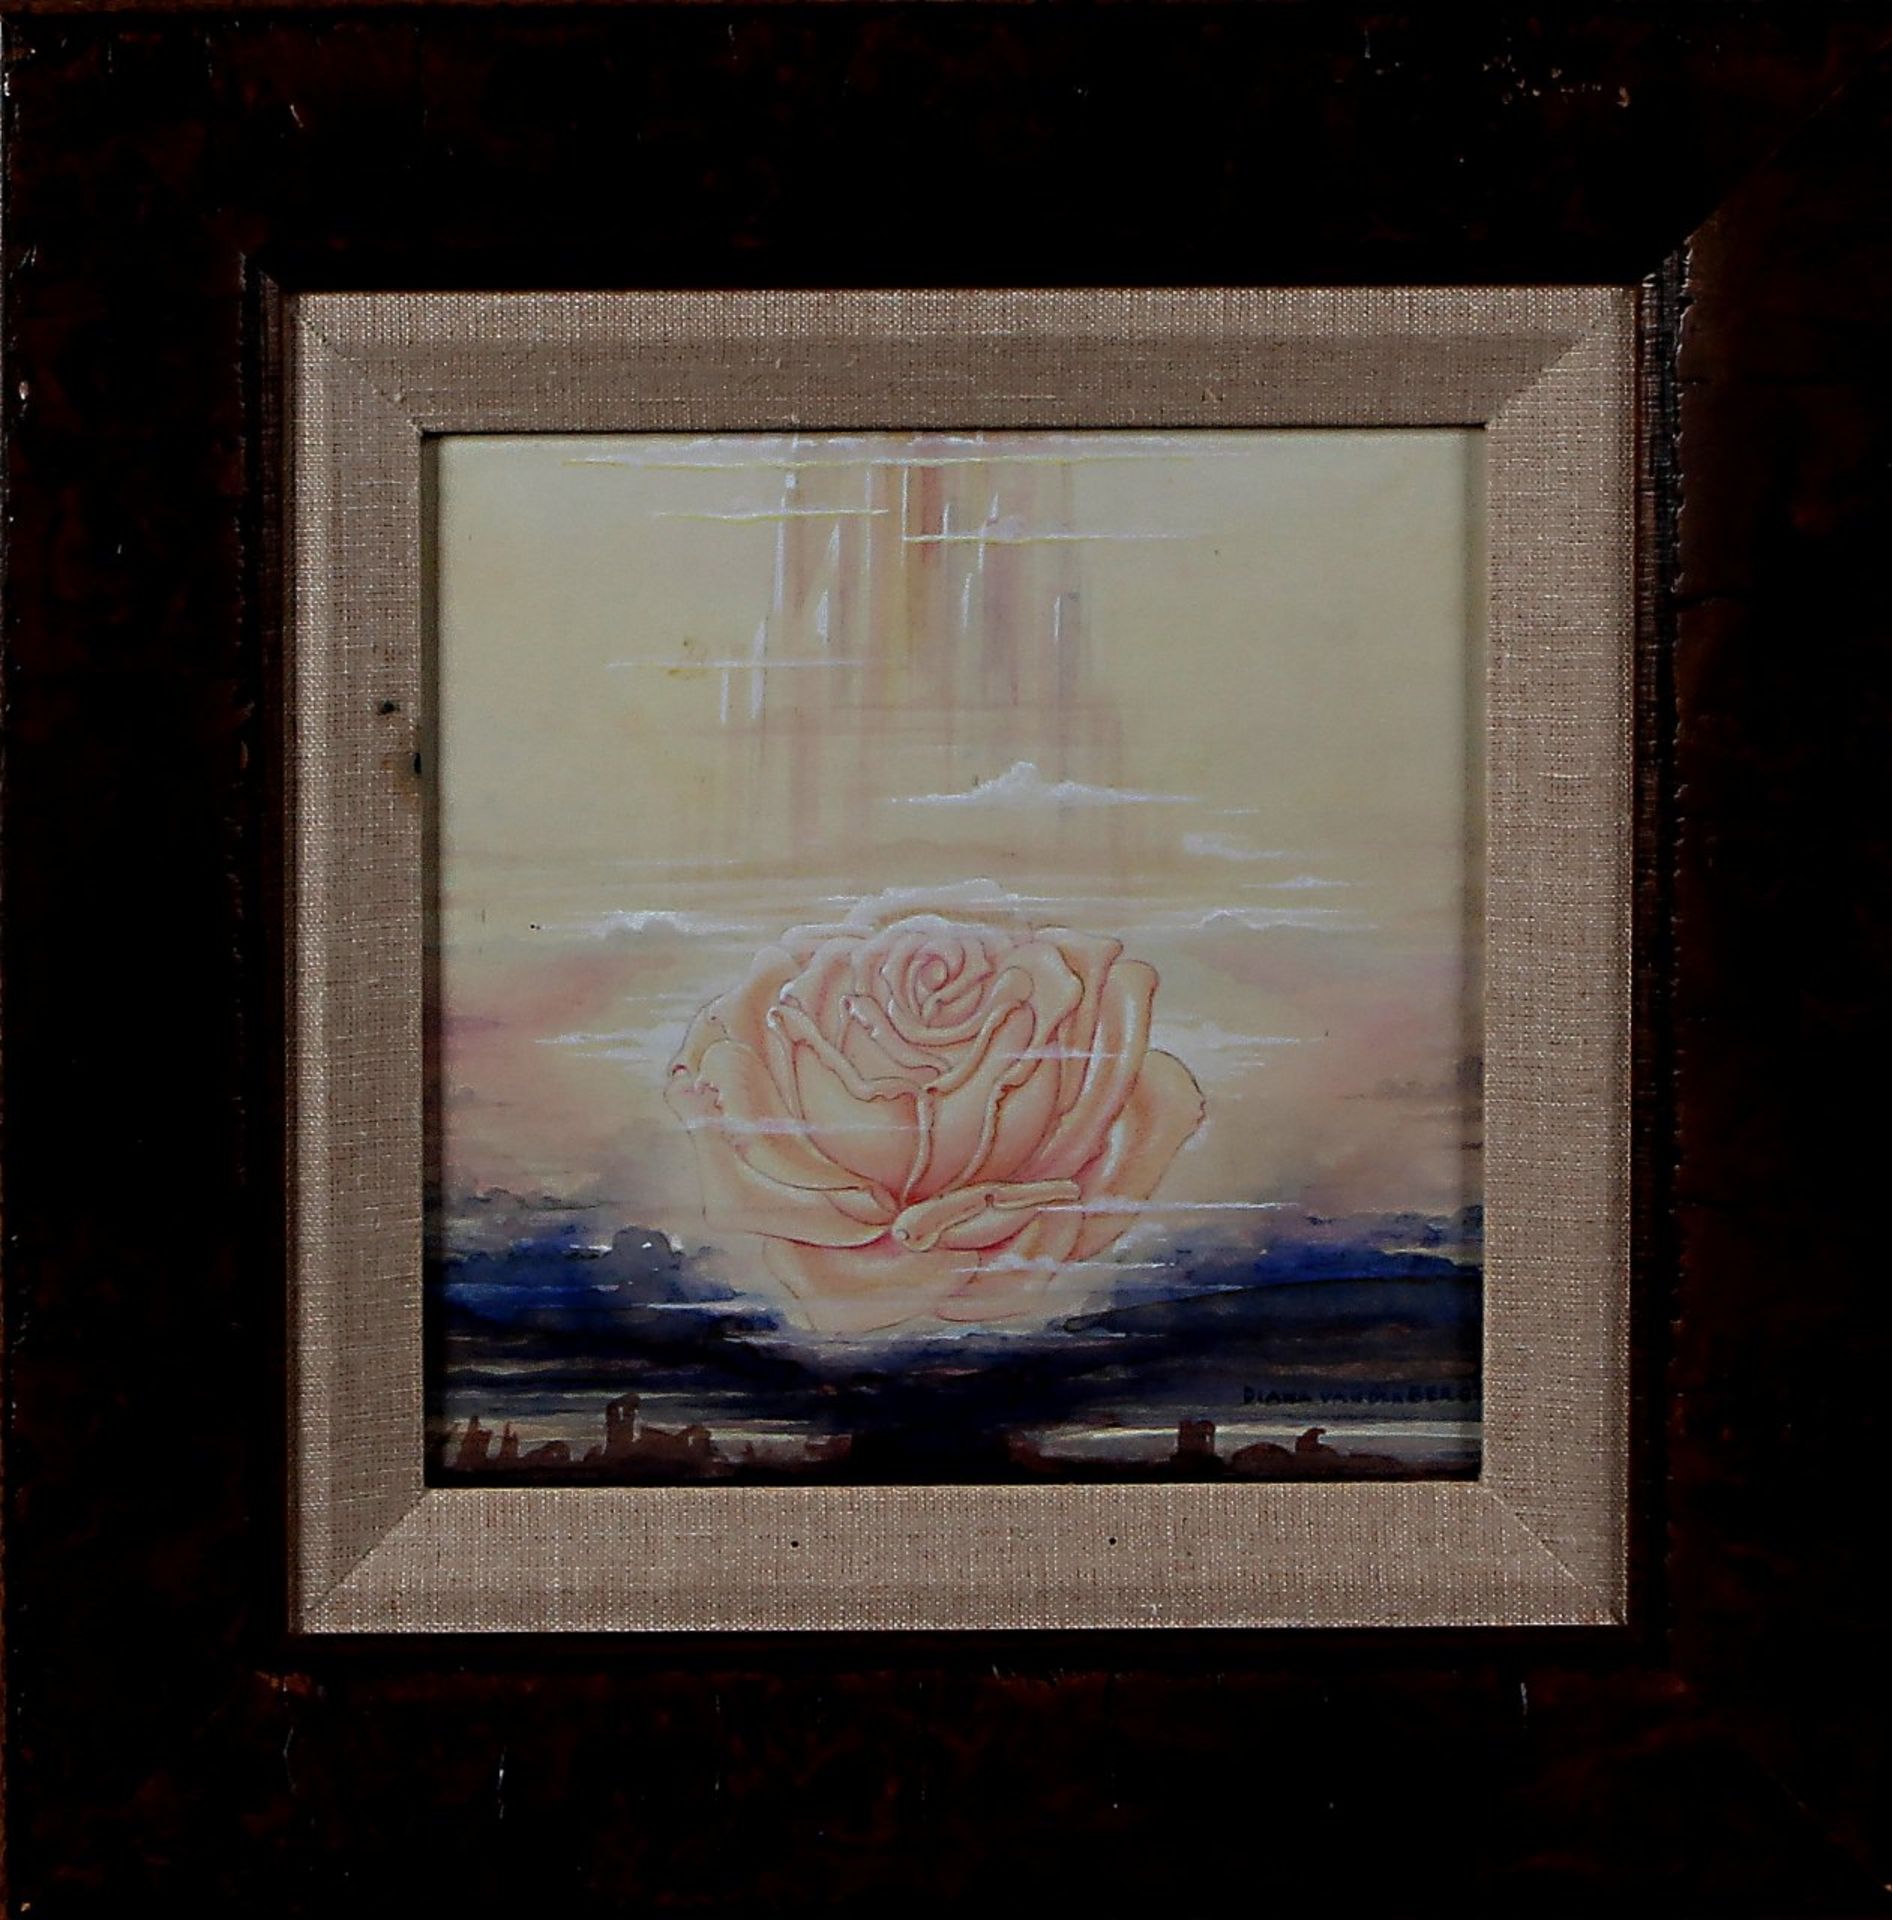 Diana van den Berg, possibly Johfra, roor floating in the horizon, watercolor on paper, 20x20cm.